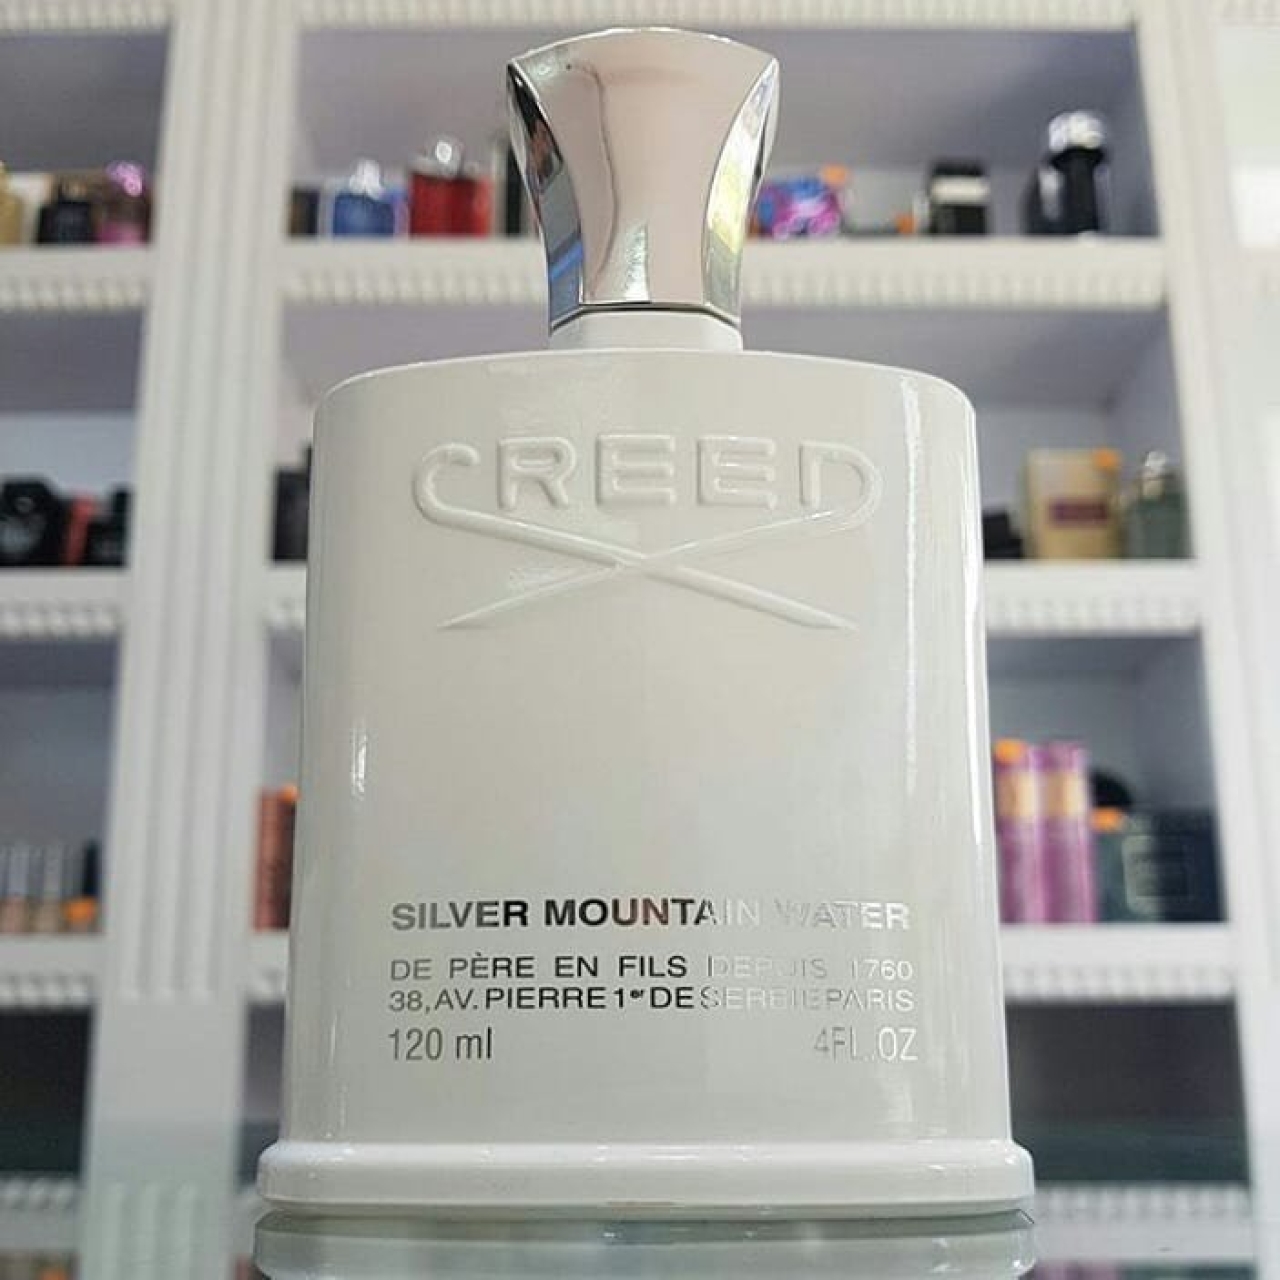 ادکلن کرید سیلور مانتین واتر-Creed Silver Mountain Water